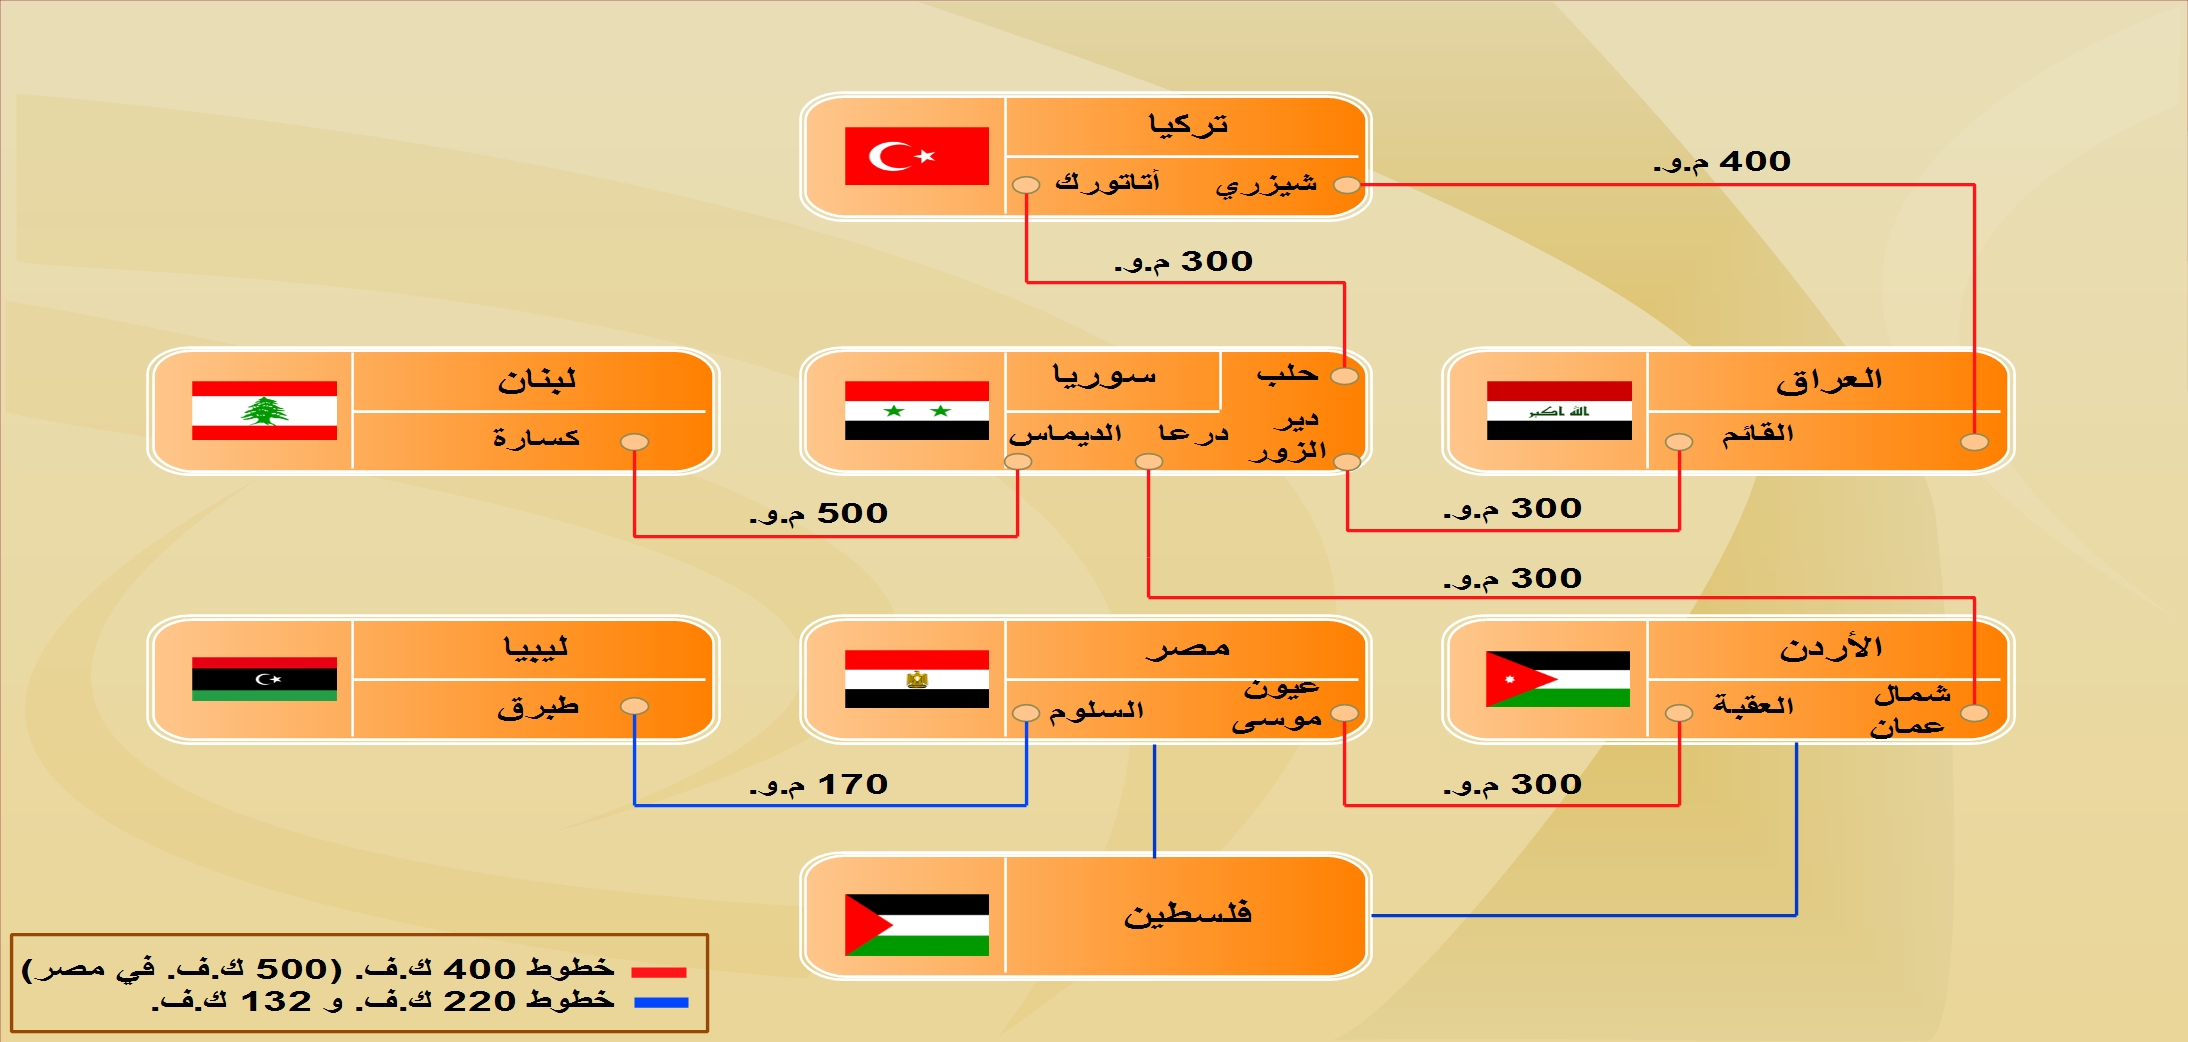 مجلس الوزراء العراقي يوافق على الإصلاحات المقدمة من العبادي  - صفحة 2 8_ar